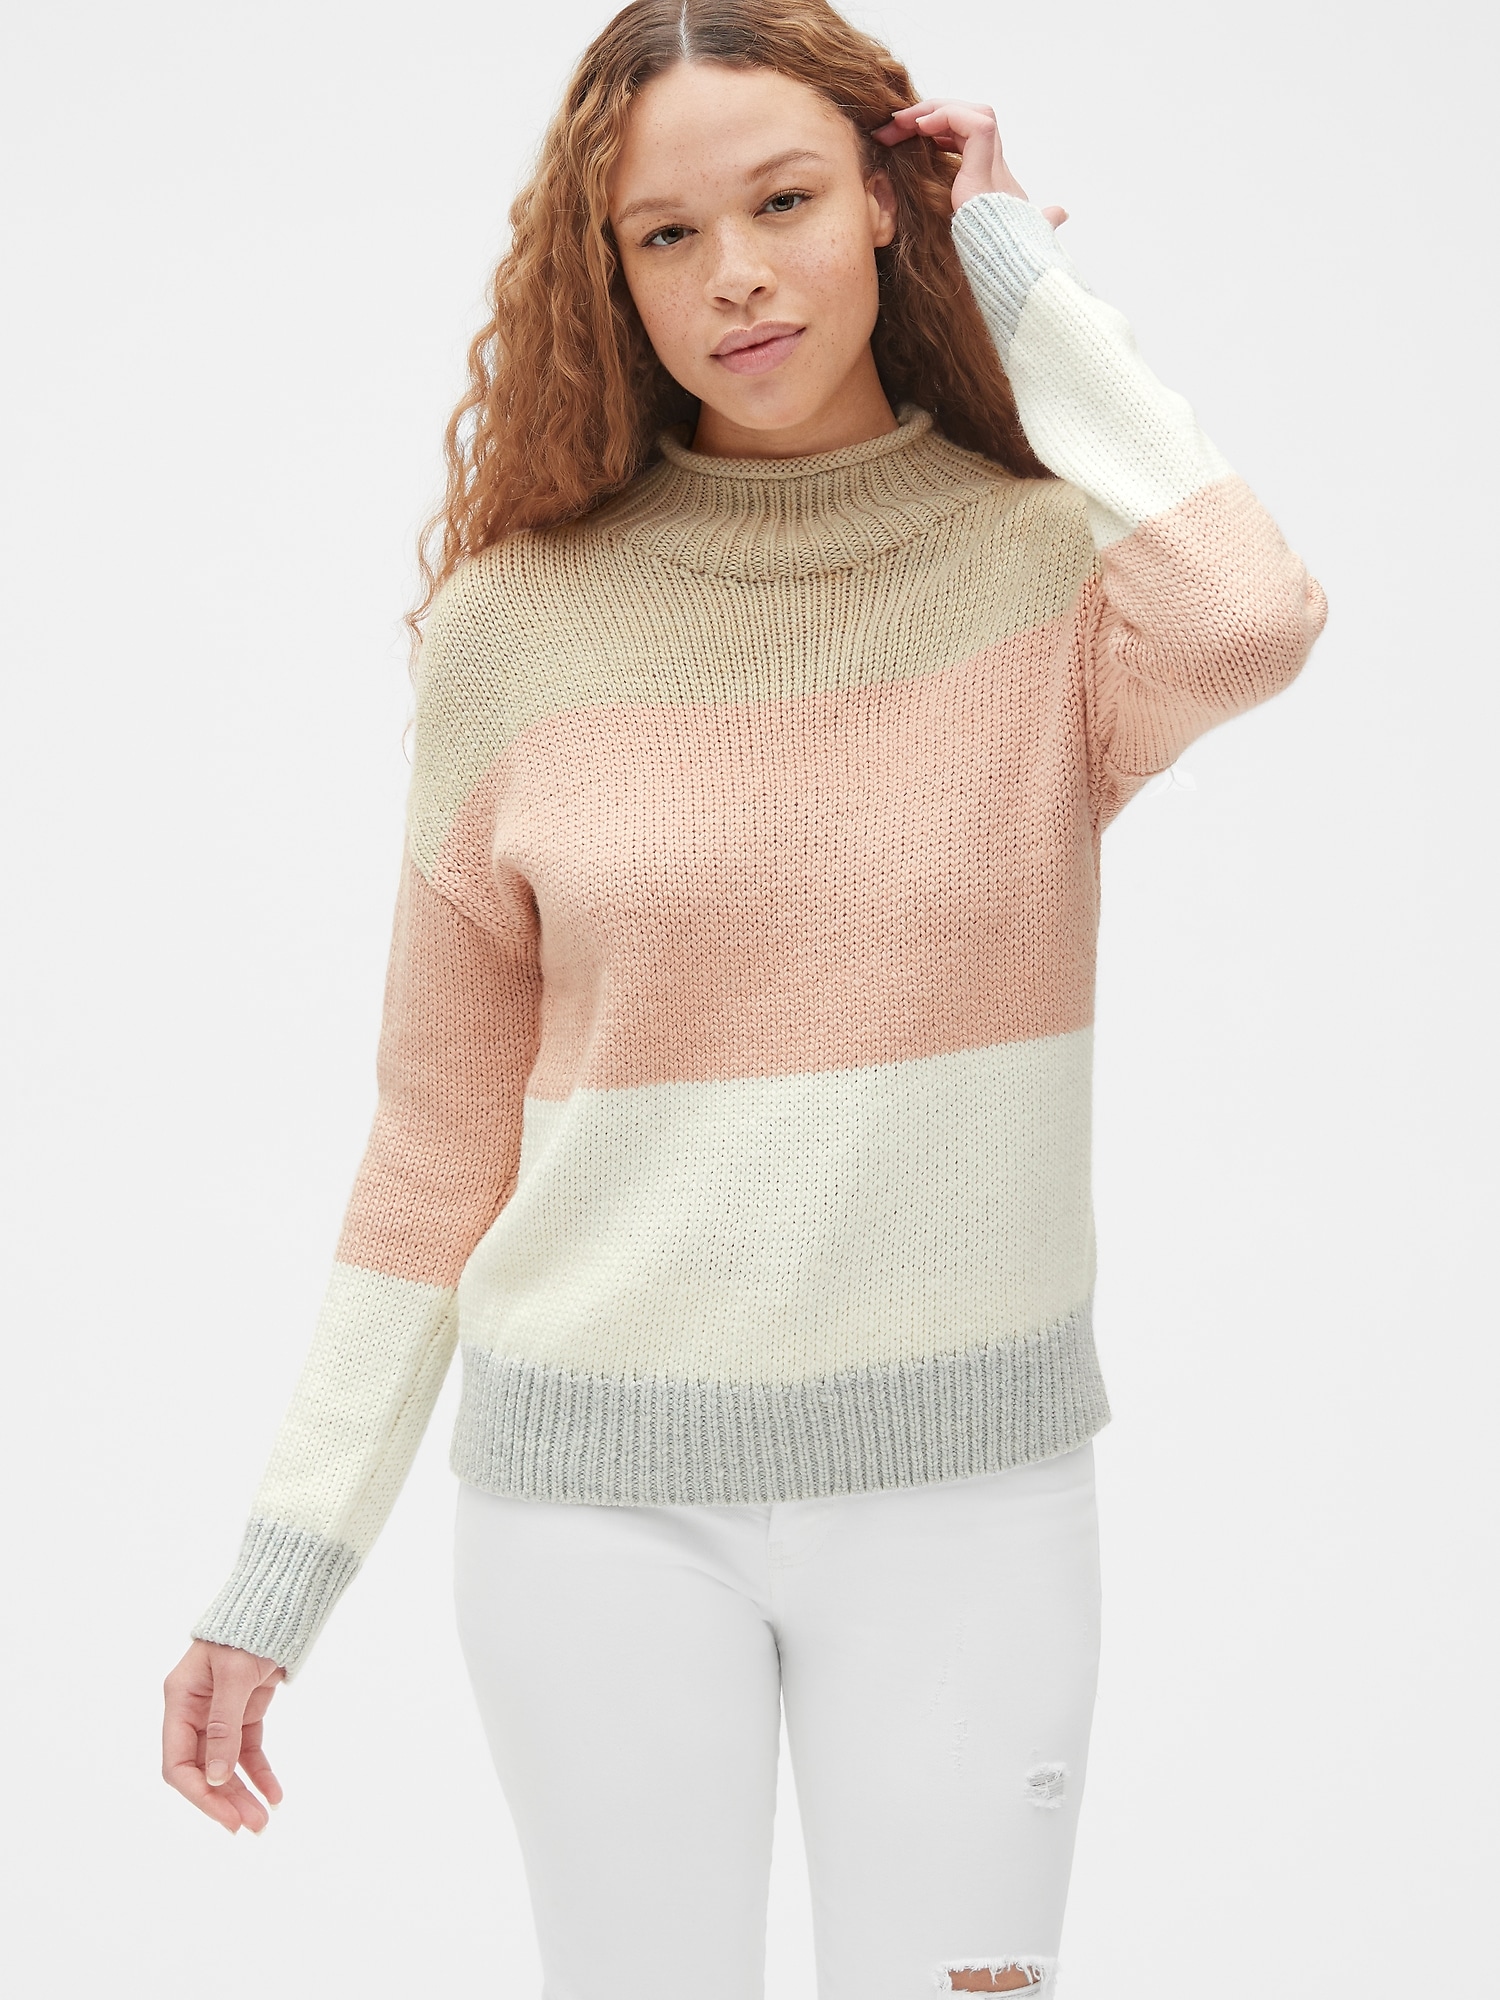 Stripe Mockneck Pullover Sweater in Wool-Blend | Gap